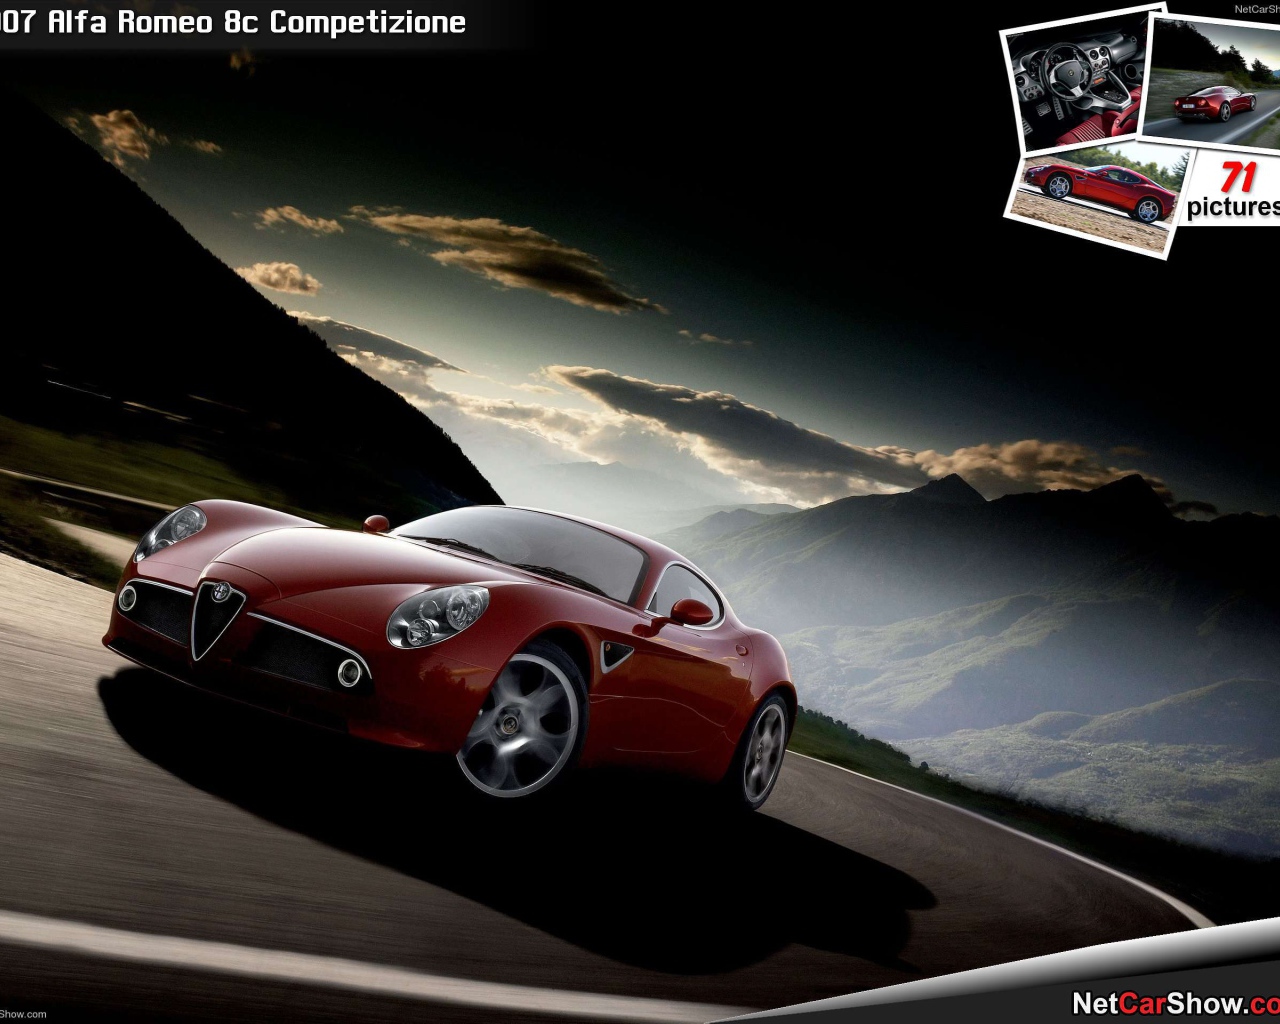 Надежный автомобиль Alfa Romeo 8c competizione